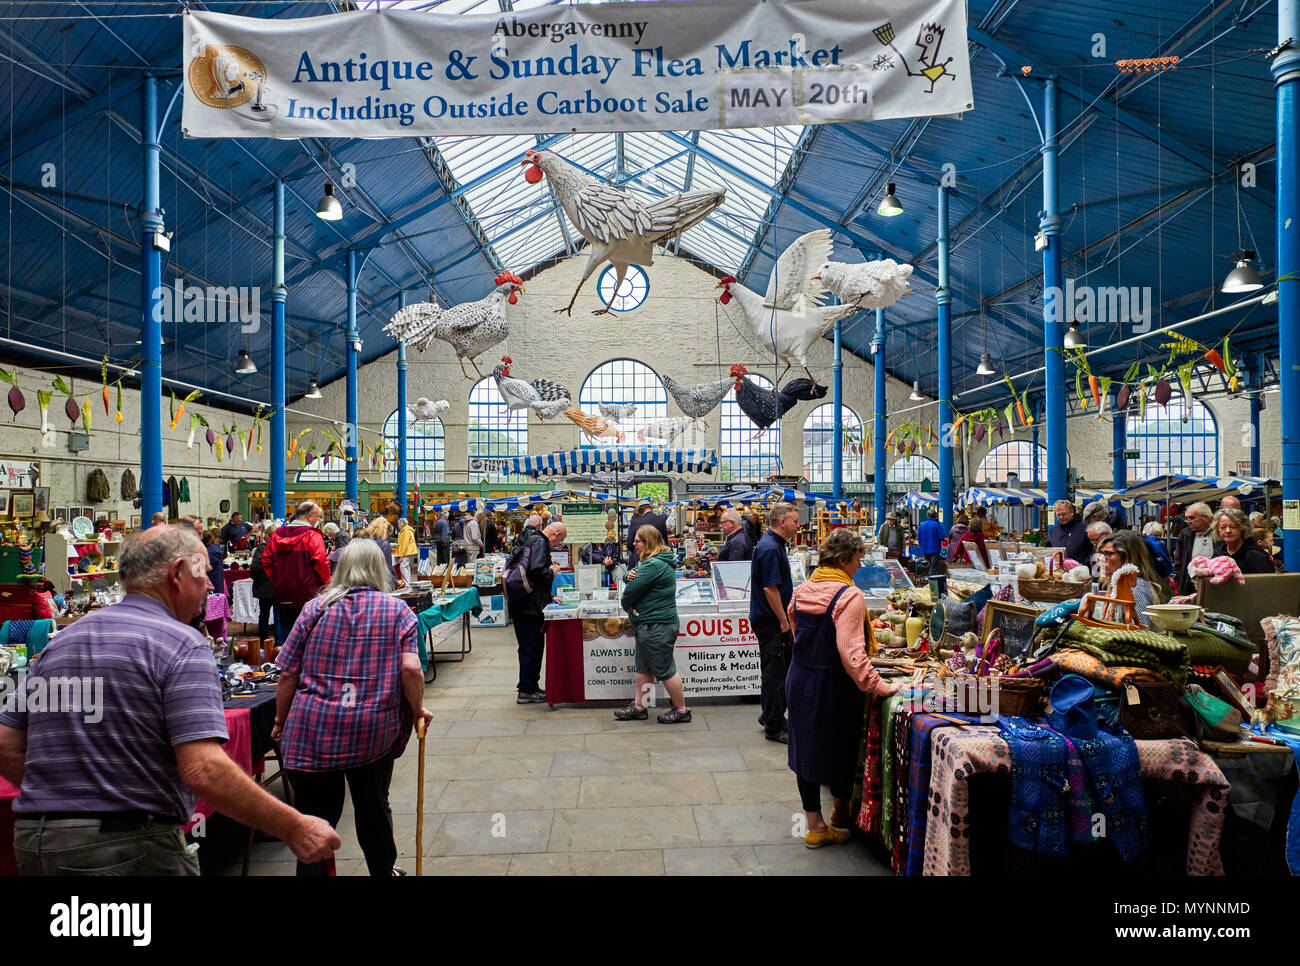 Wöchentliche Floh- und Antiquitätenmarkt in Abervavenny, Wales Stockfoto